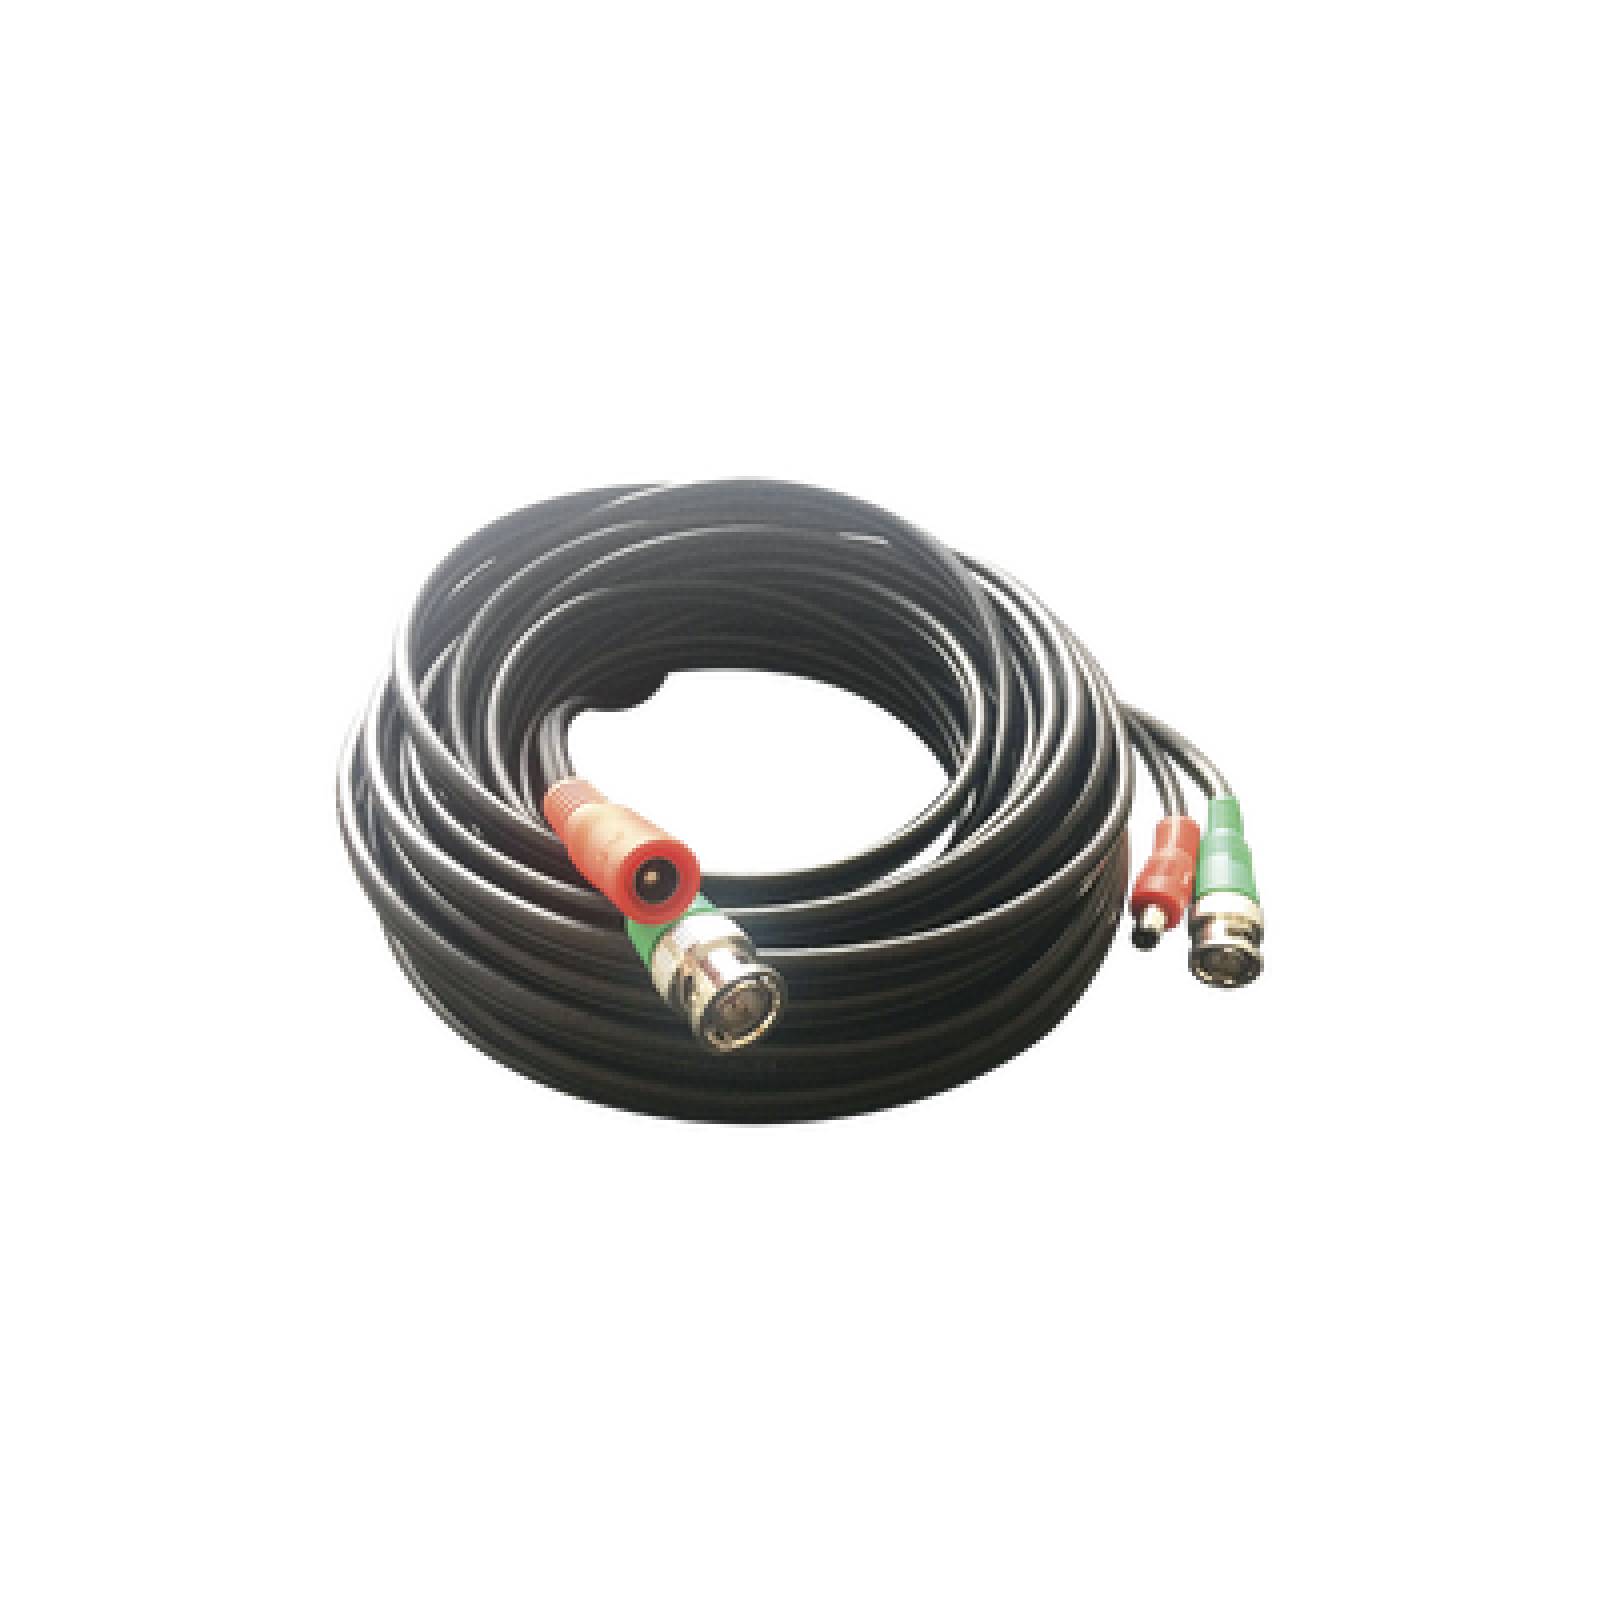 Cable en HD para video y alimentación de 10 metros/ EPCOM TITANIUM